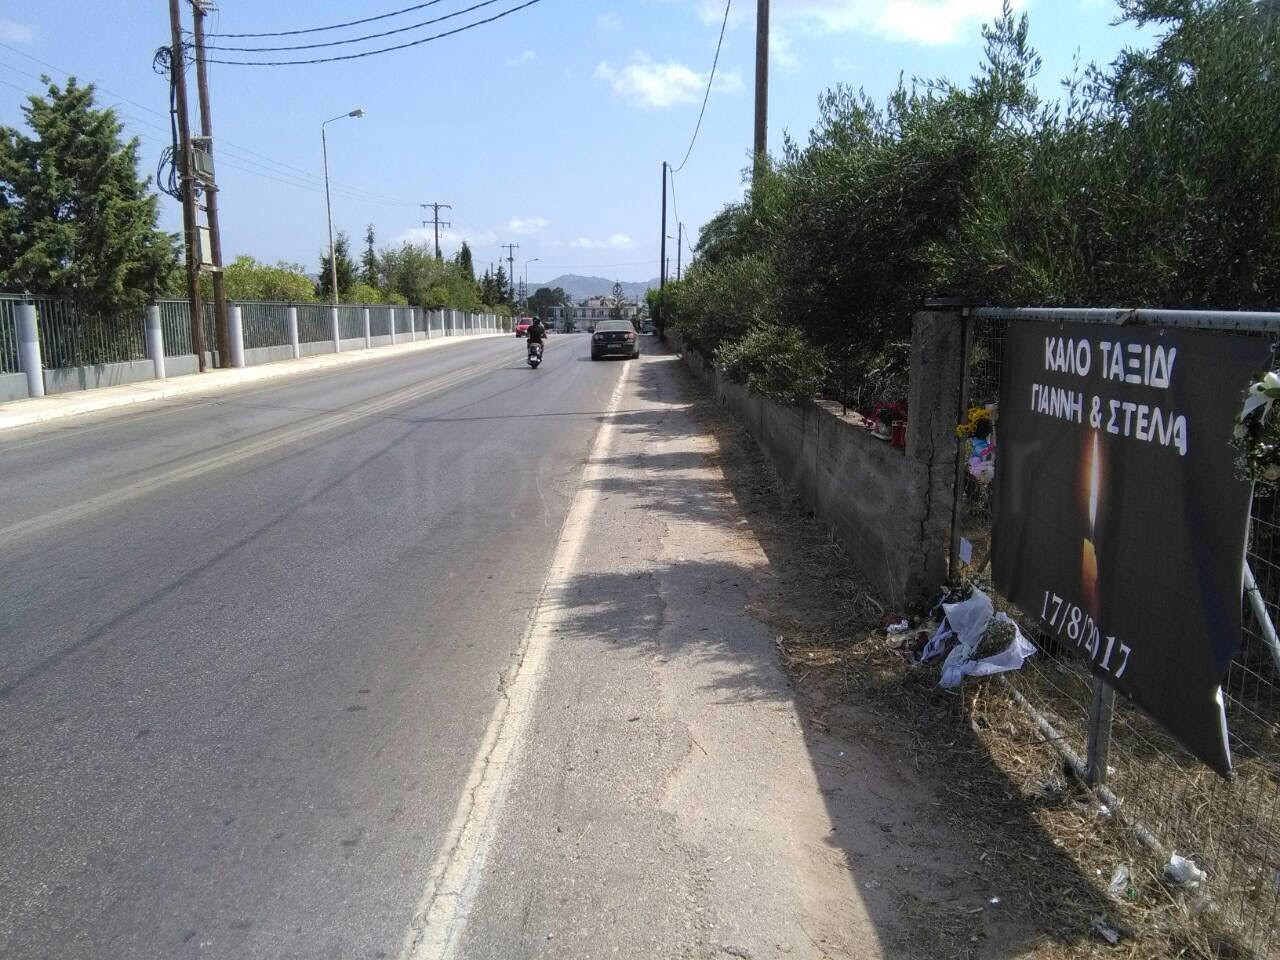 Μεθυσμένος ο οδηγός που σκότωσε τους δυο φοιτητές στην Κρήτη, λέει ο δικηγόρος τους